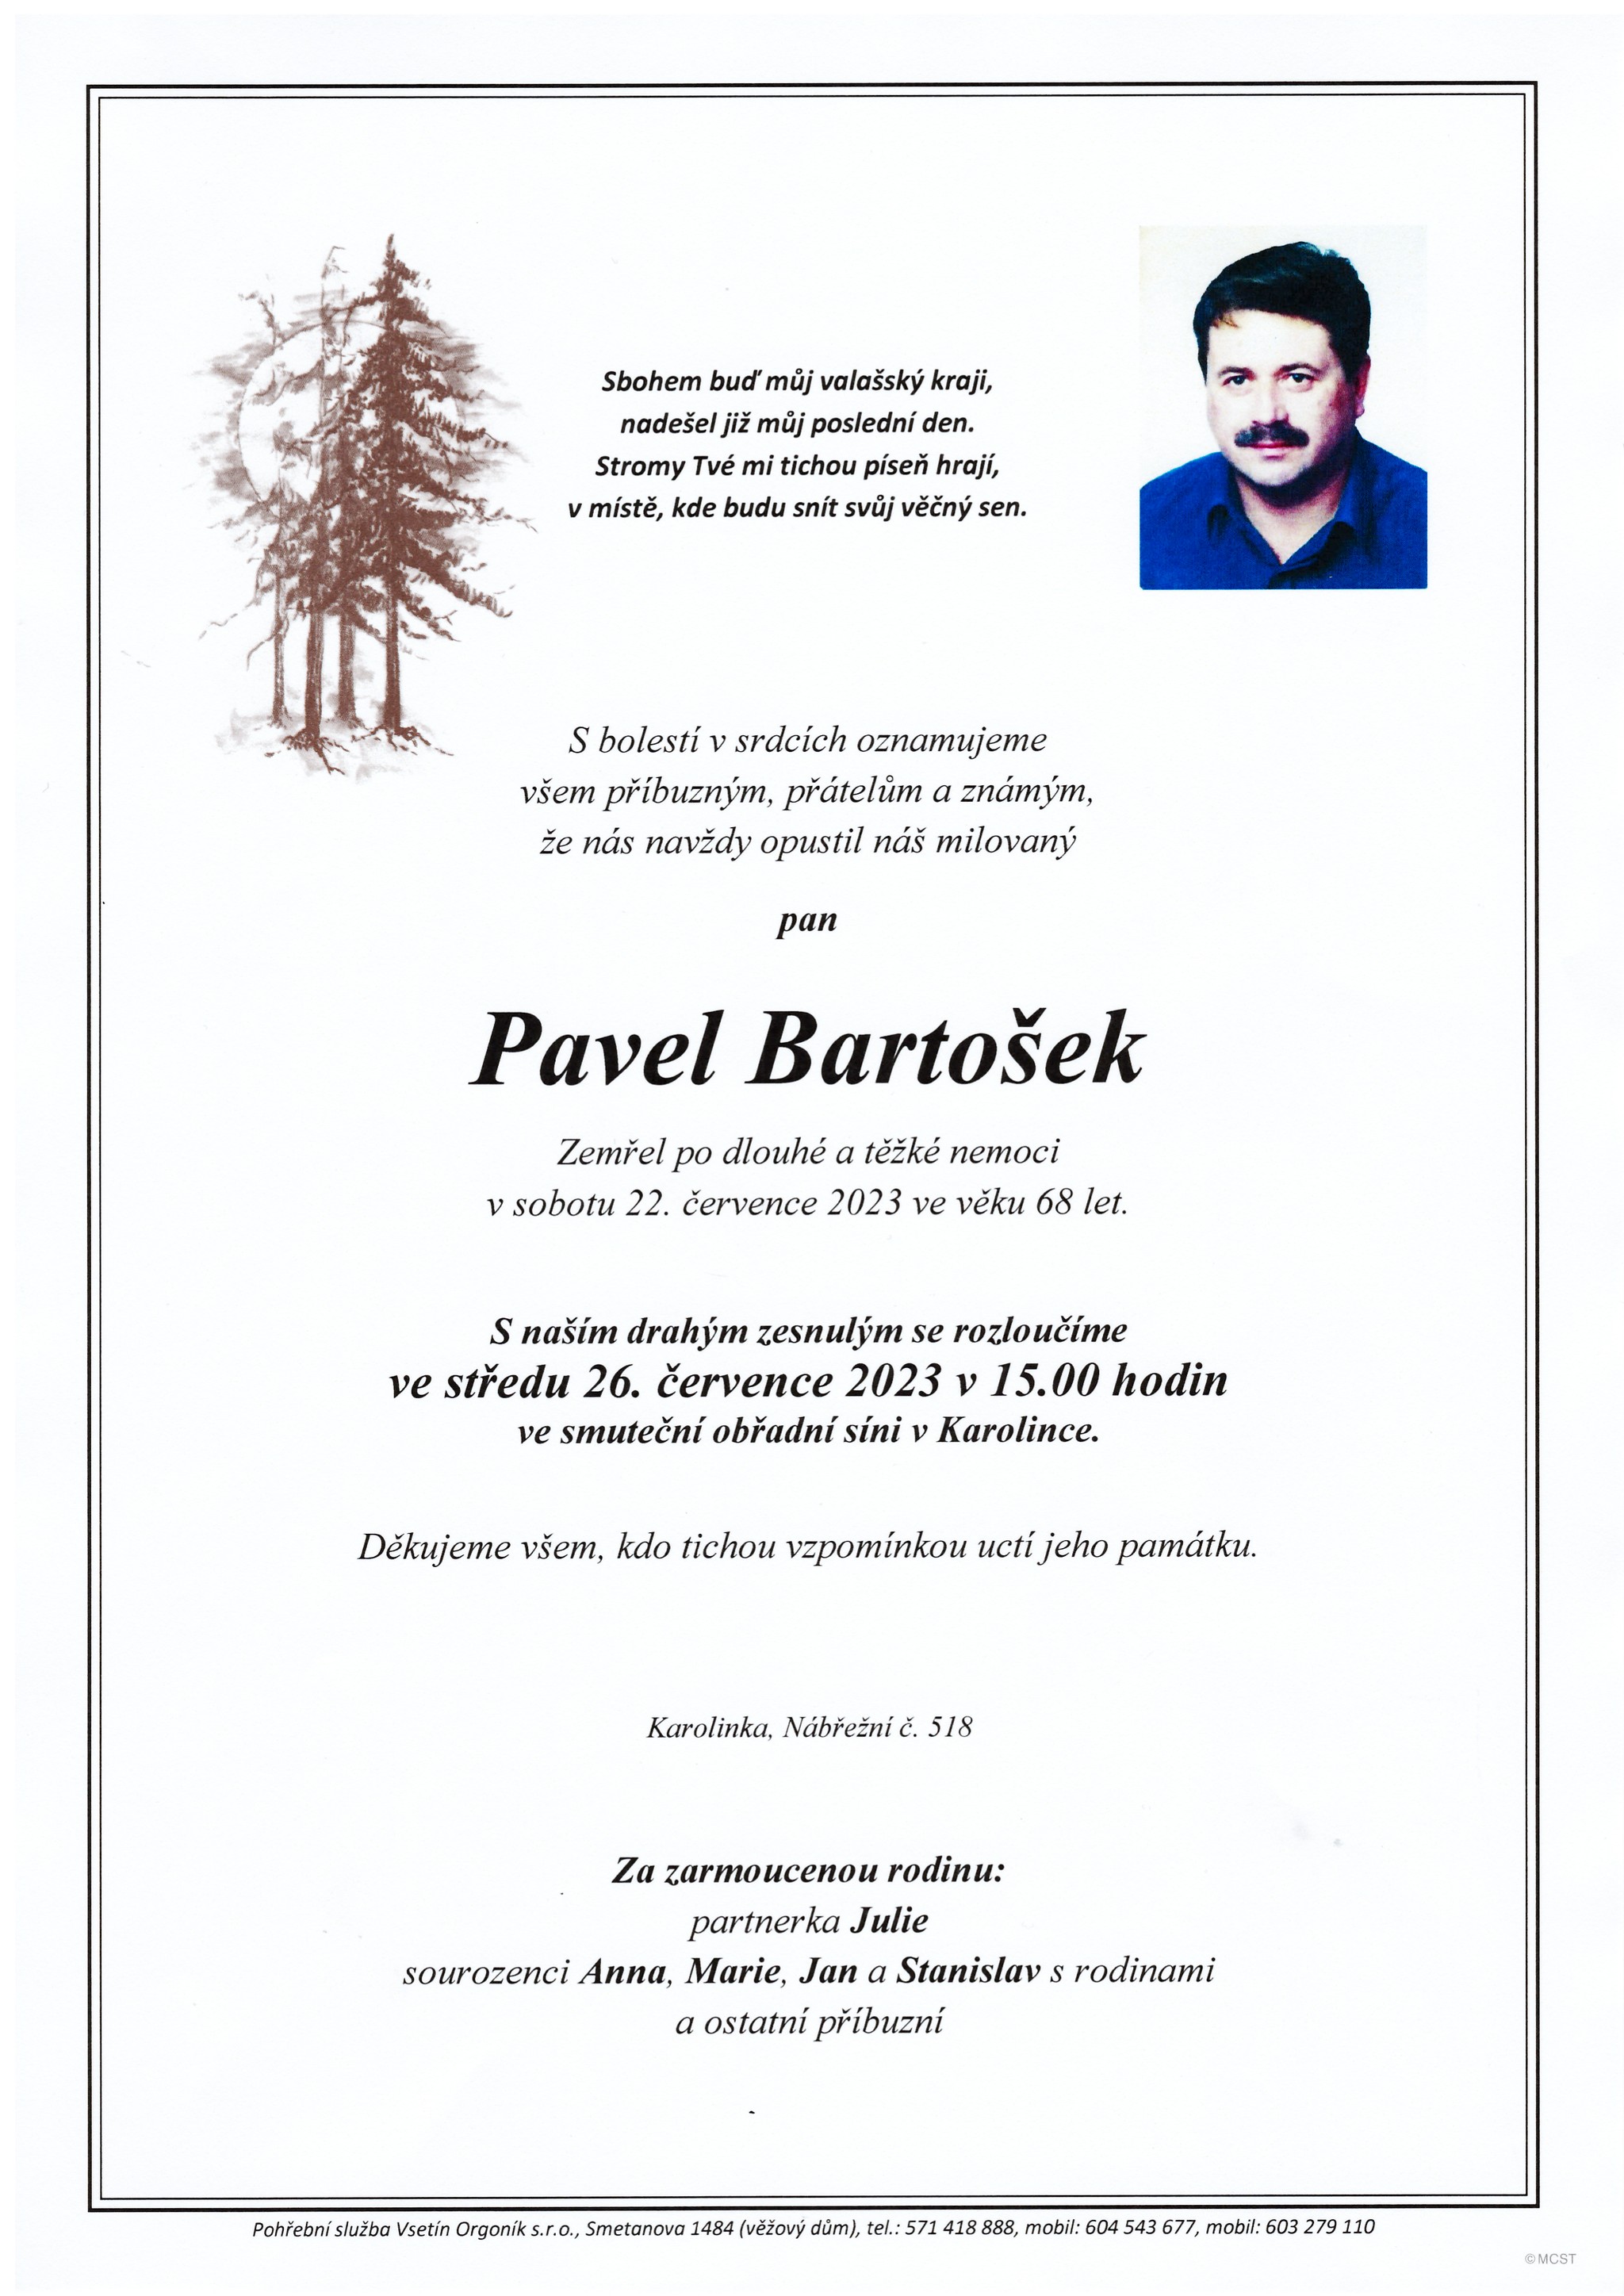 Pavel Bartošek